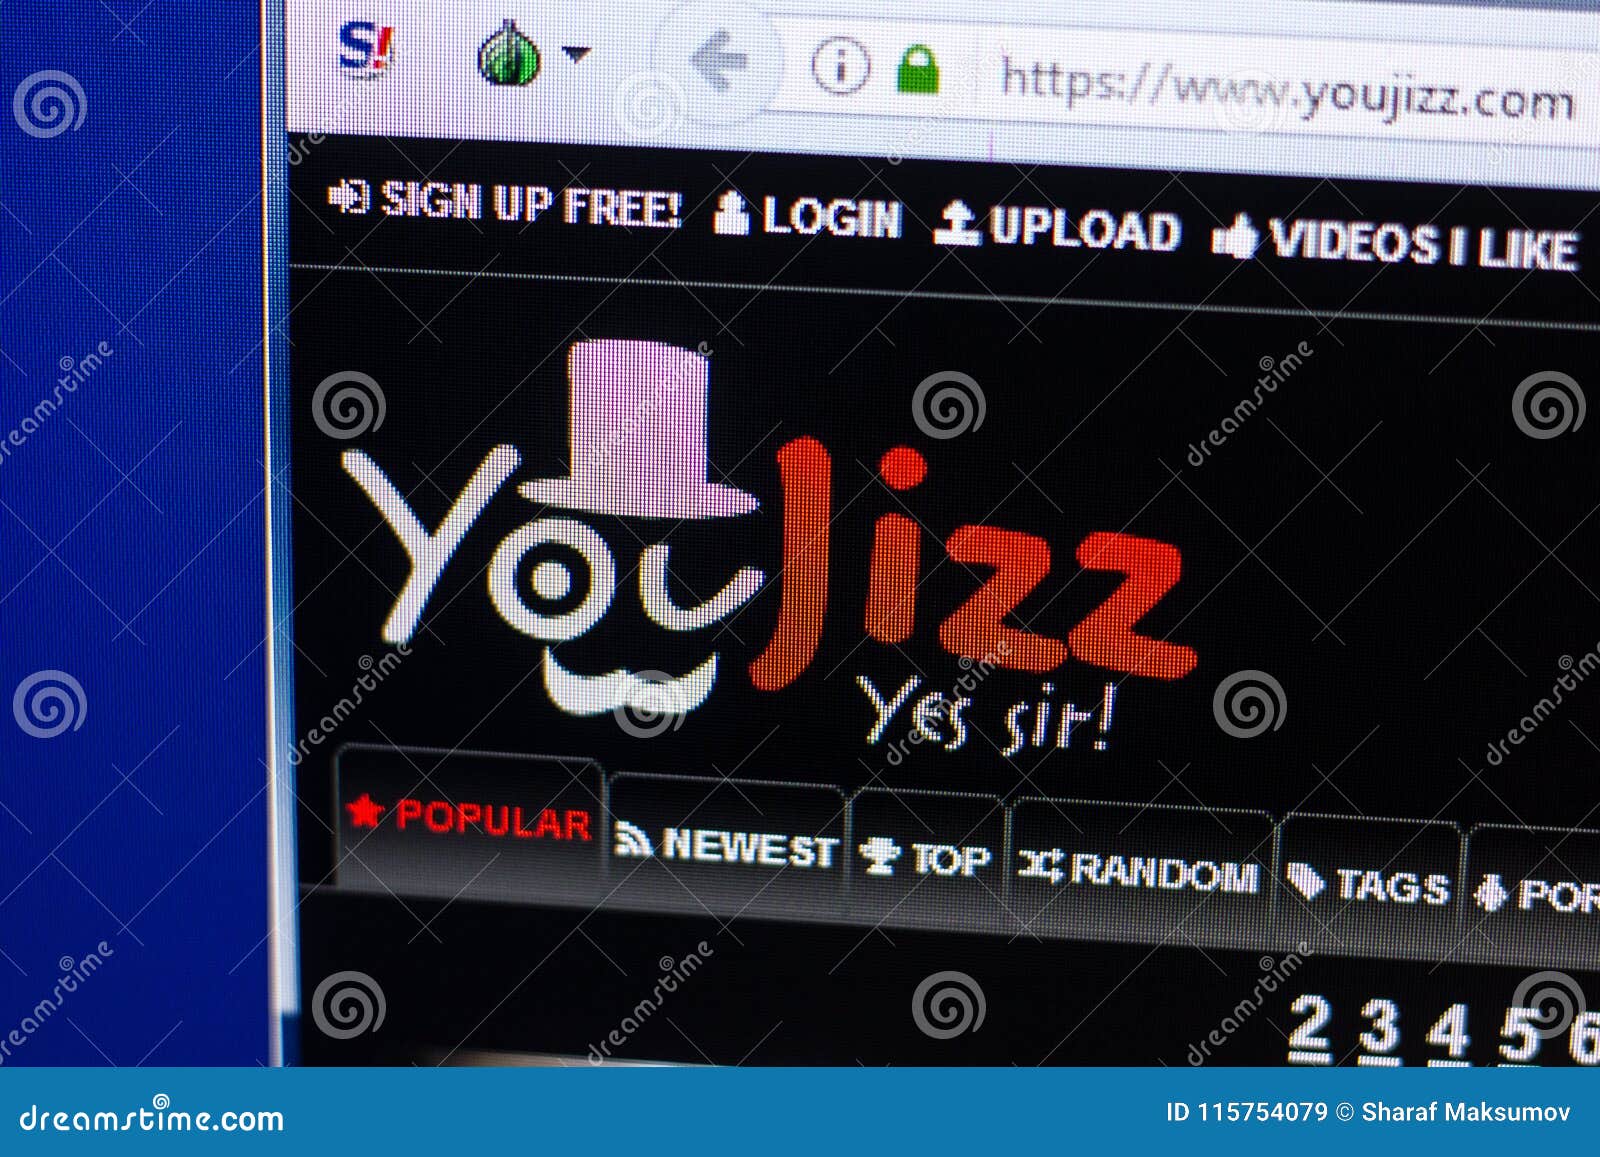 Youjizz..com